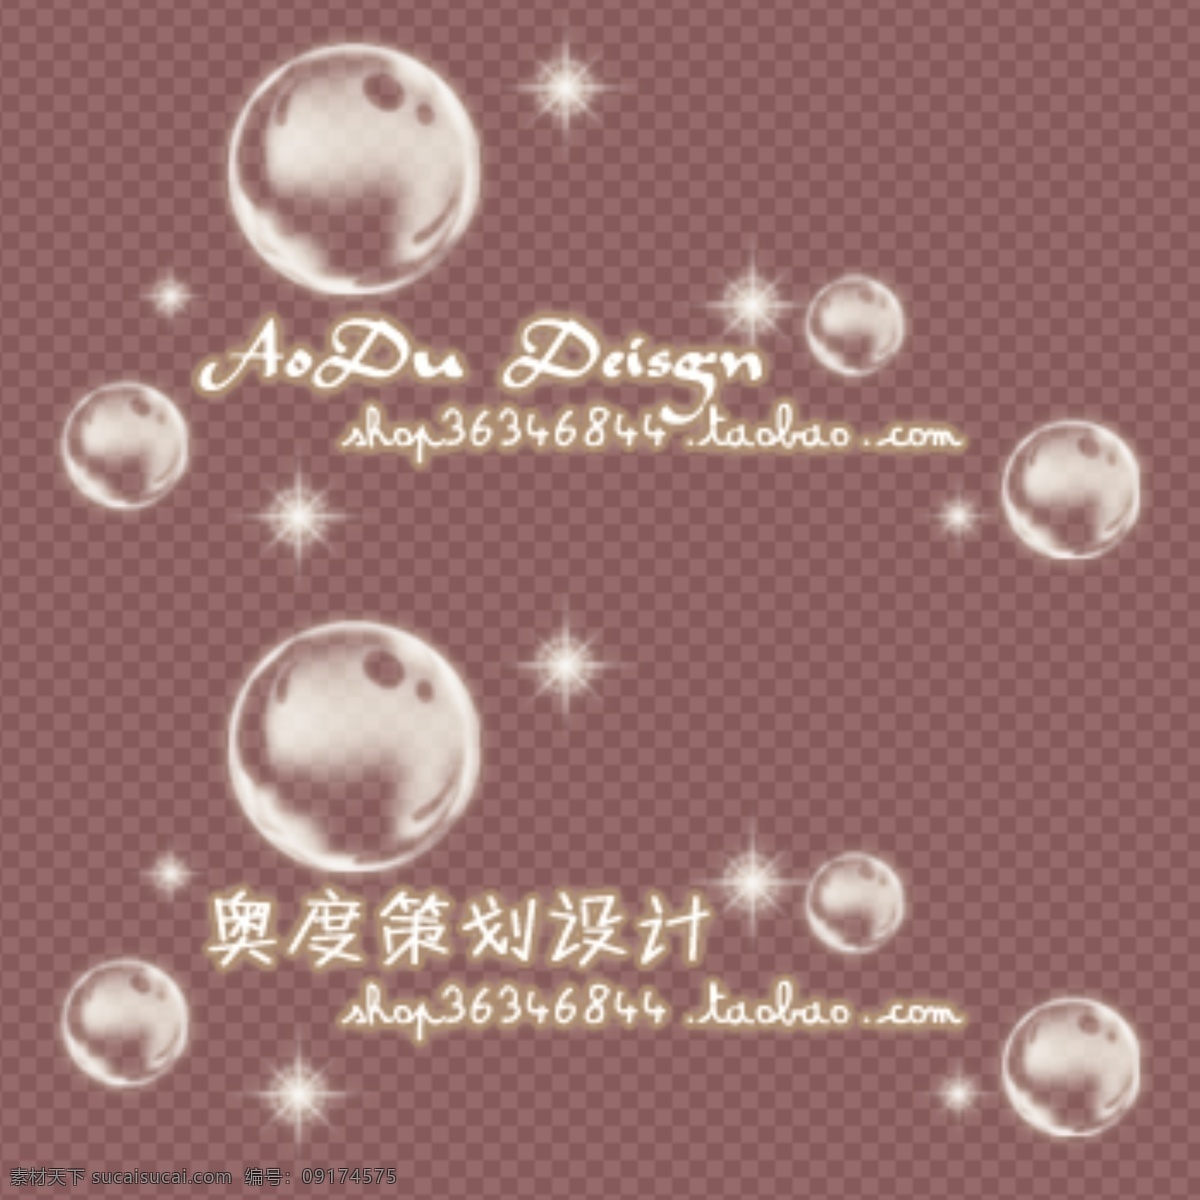 梦幻泡泡水印 模版下载 梦幻 泡泡 水印 logo logo设计 棕色